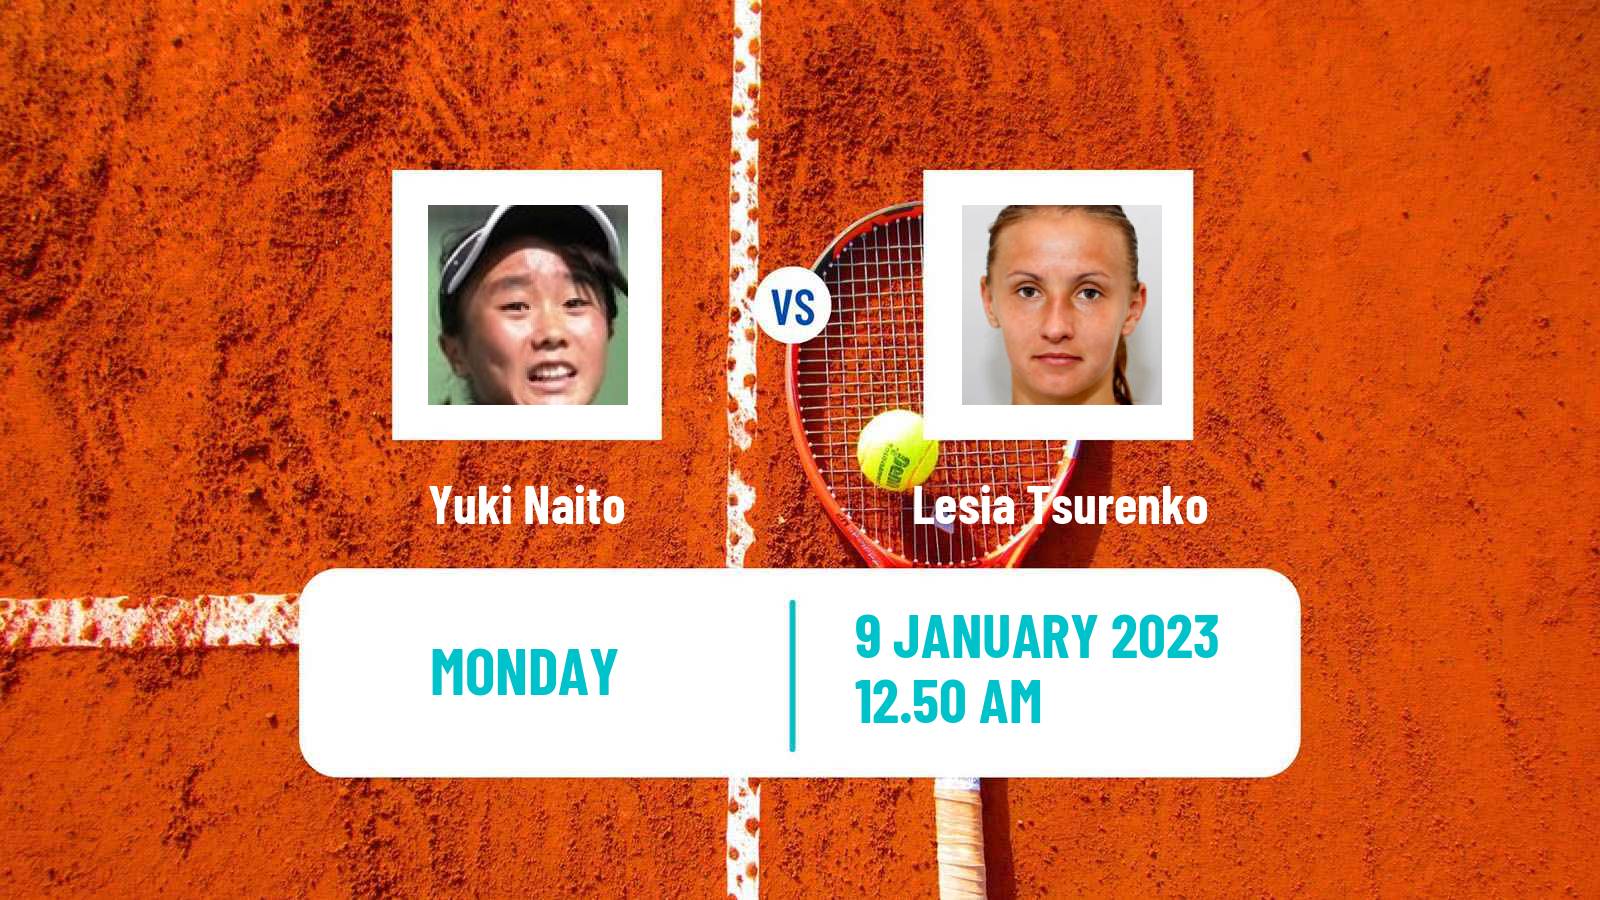 Tennis WTA Australian Open Yuki Naito - Lesia Tsurenko